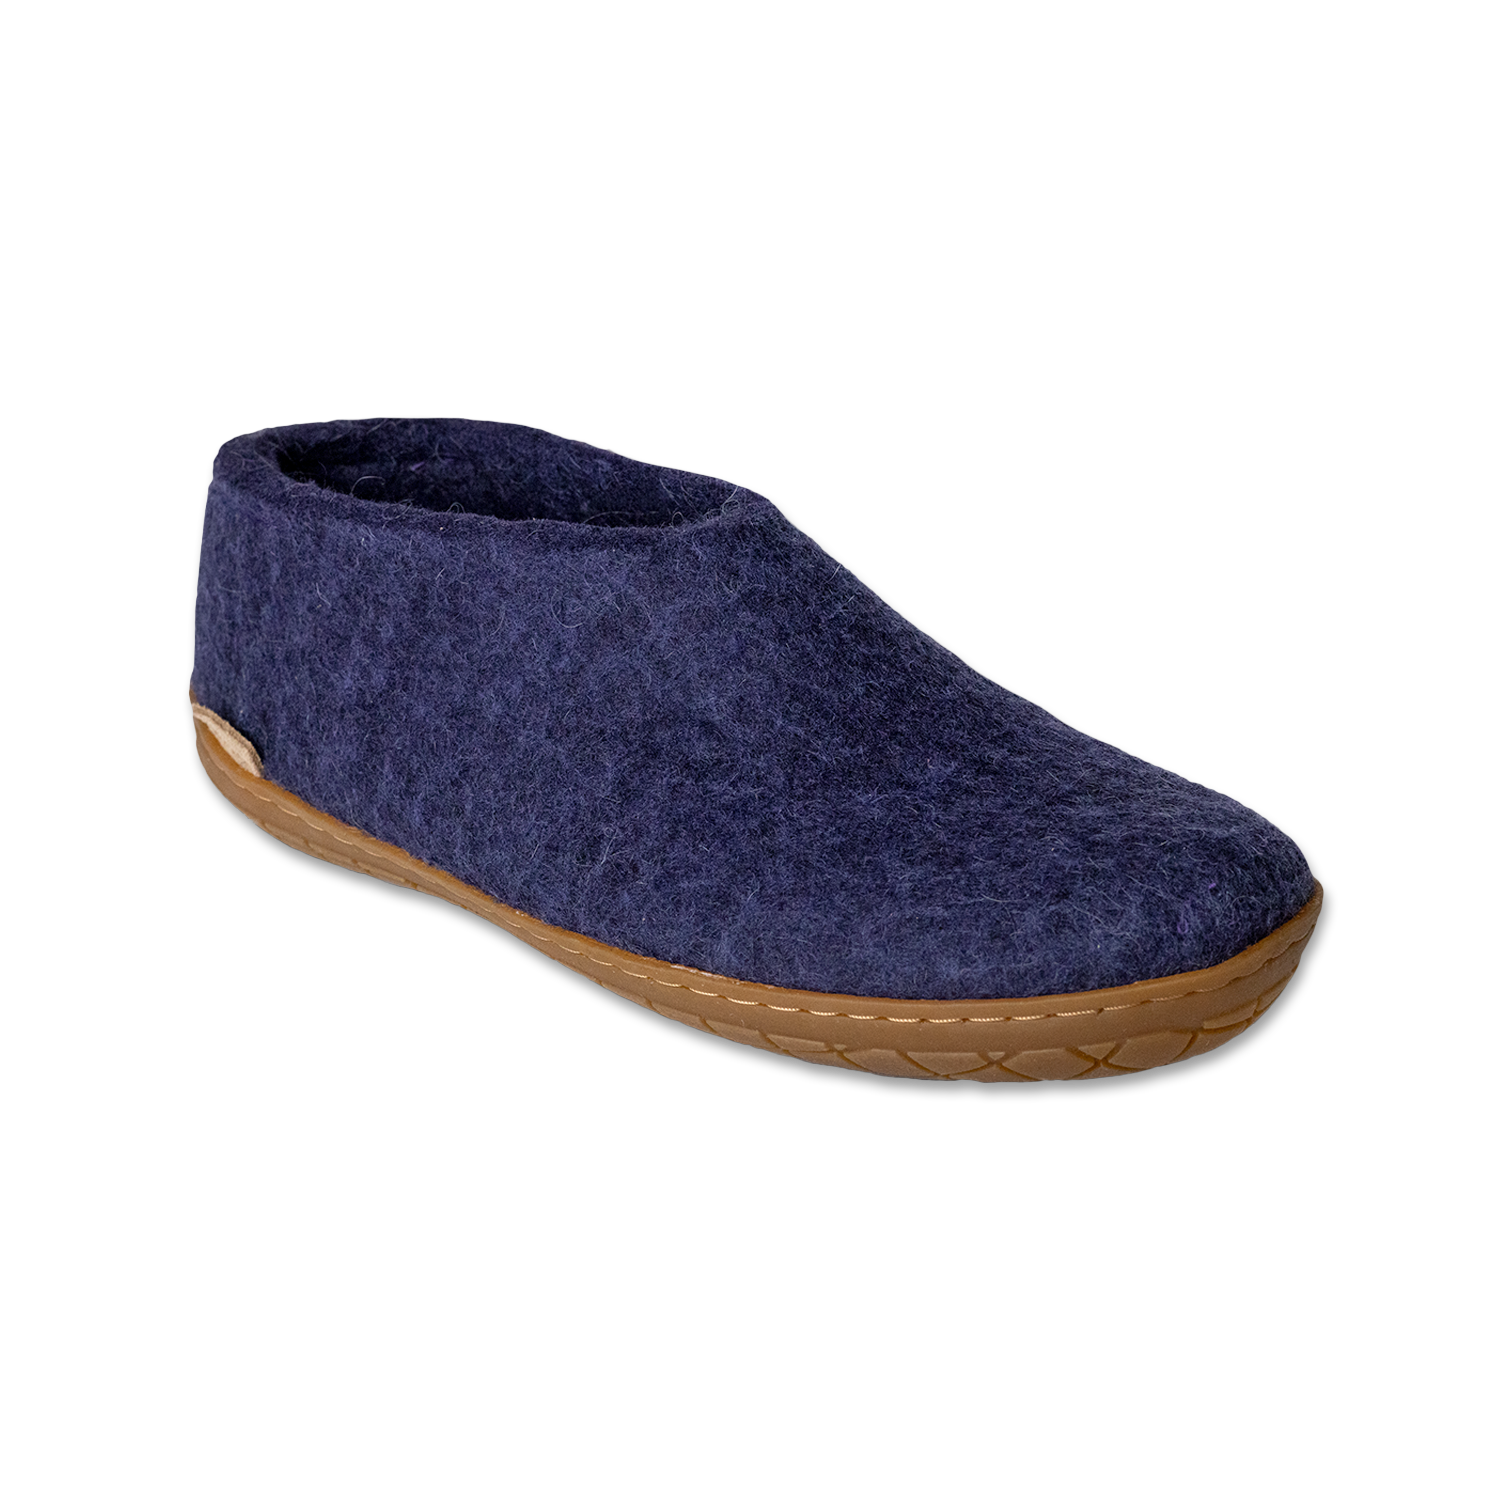 Glerups Shoe Purple - Rubber Sole